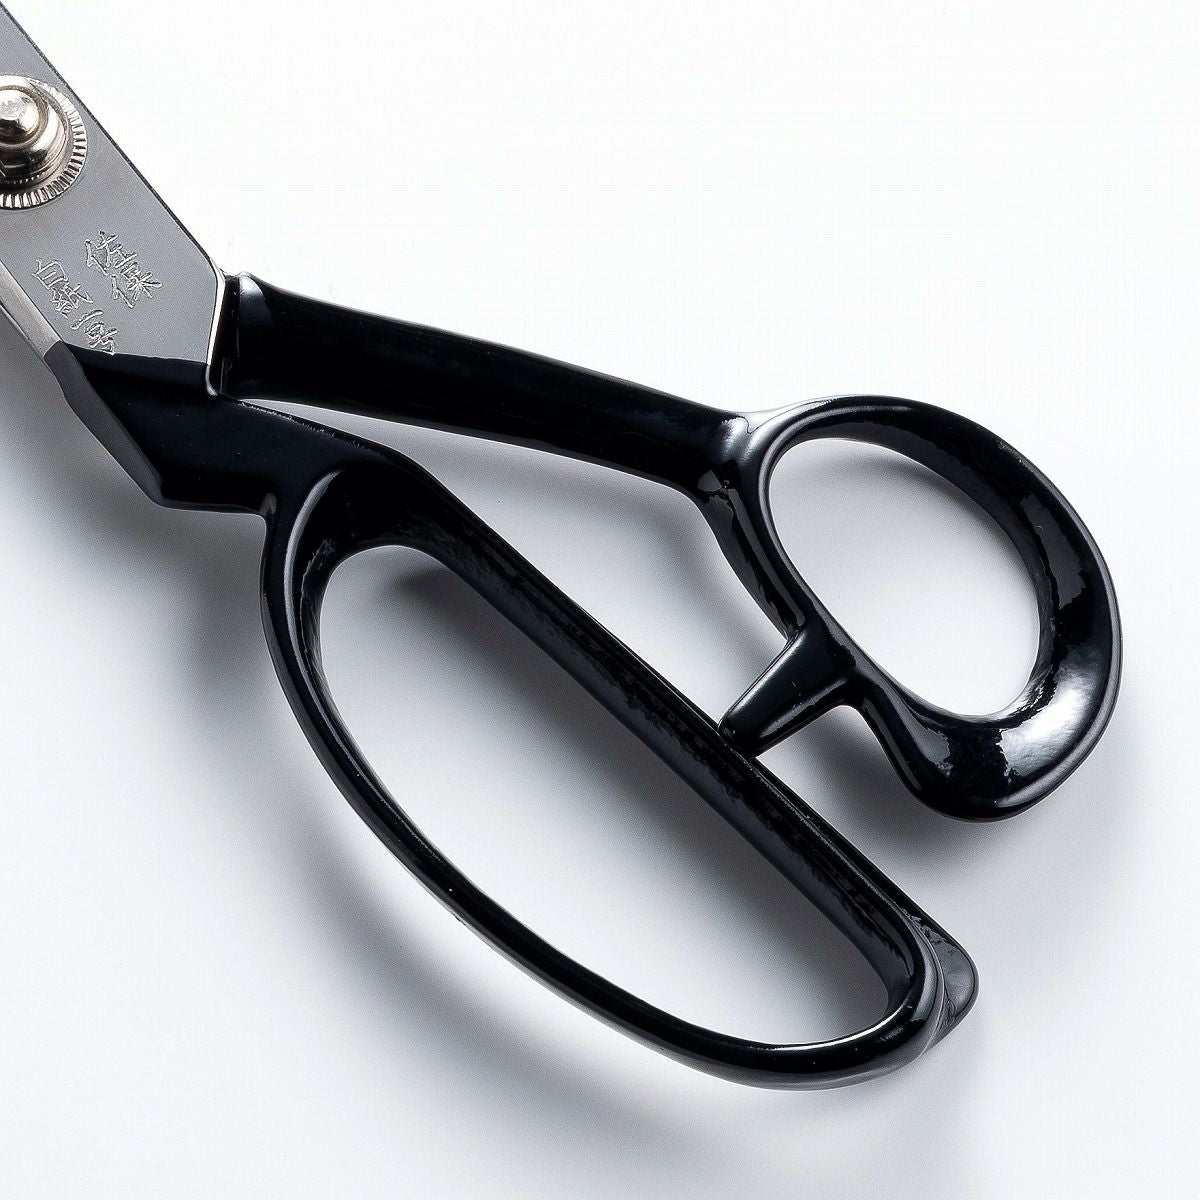 HONMAMON "SAHO" Edge : Shirogami 1, Whole Length : 240mm(abt 9.4") Sewing Scissors (Dressmaker's Shears) For Left Hander